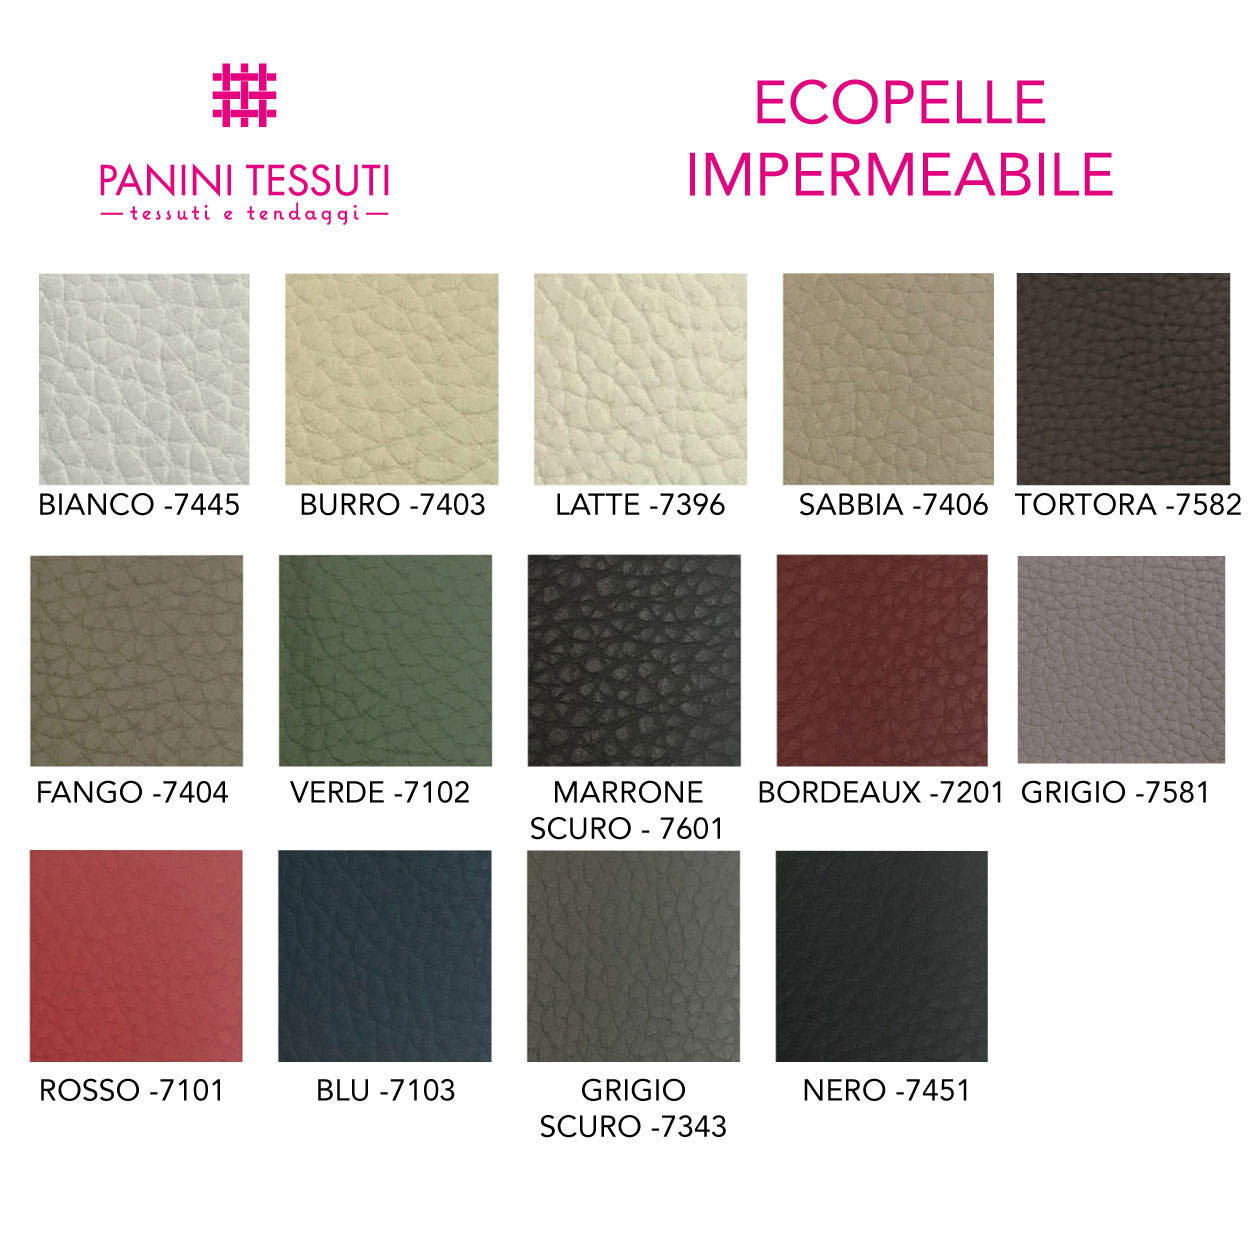 Ecopelle impermeabile cartella colore shopware (3)